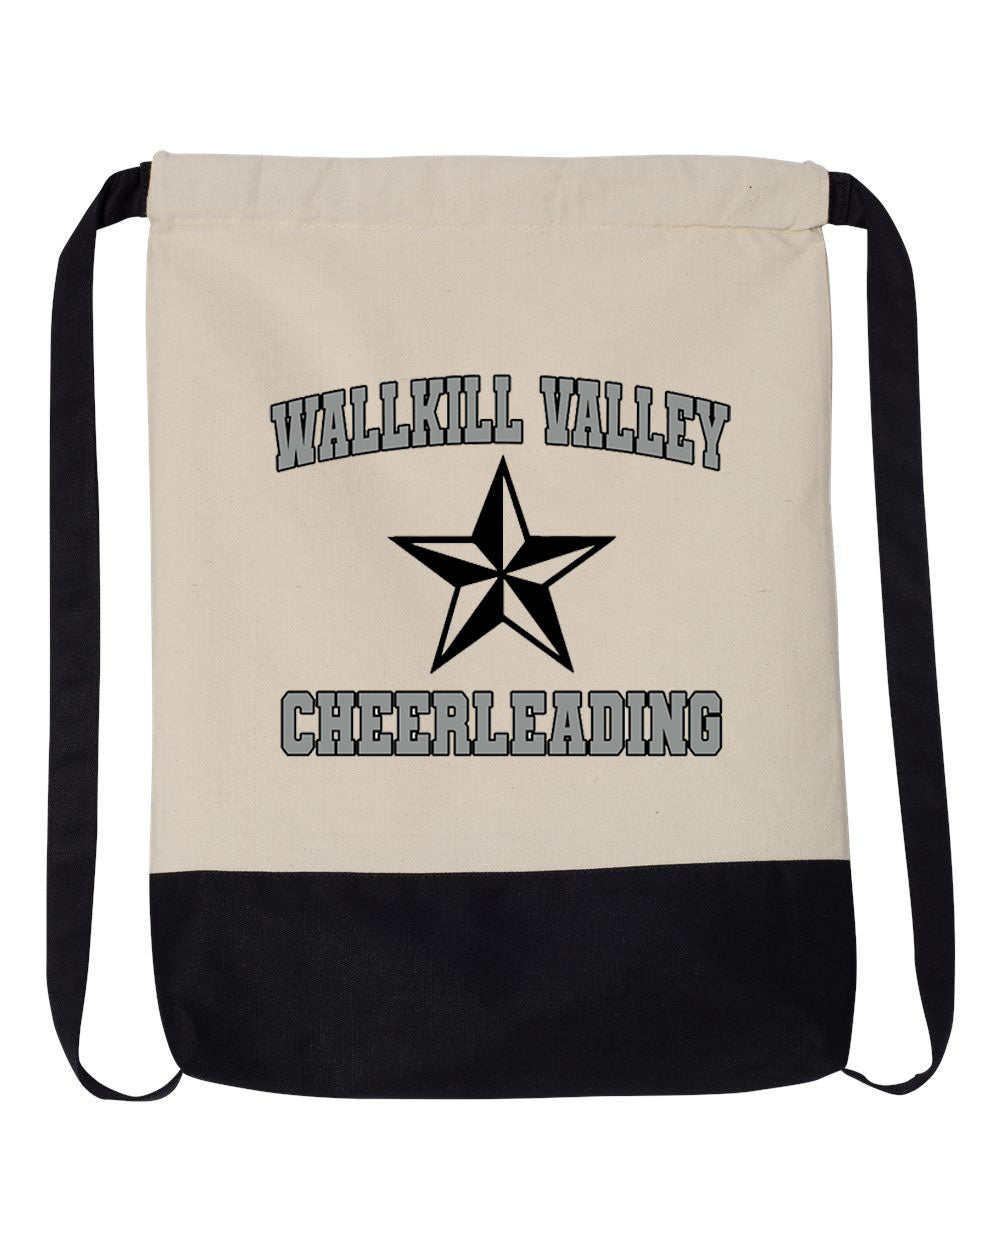 Wallkill Cheer design 6 Drawstring Bag